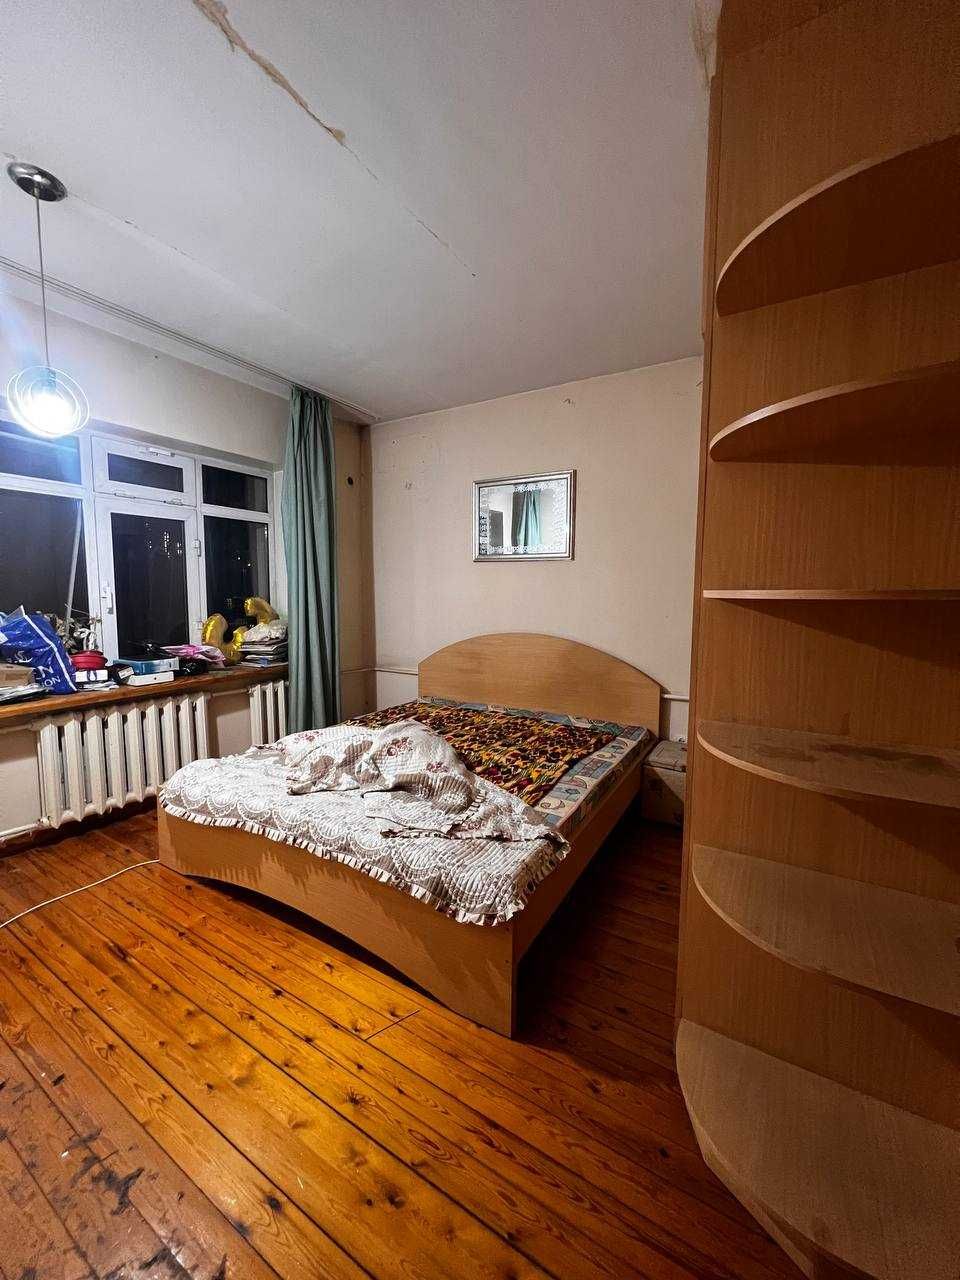 Продается квартира на Новомосковской по выгодной цене 3/4/4 73 м²!